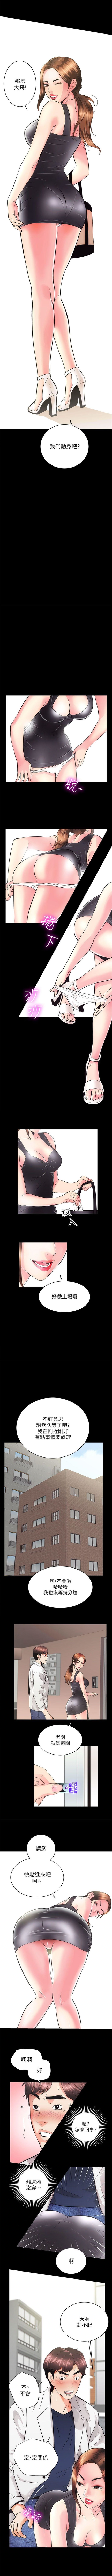 性溢房屋 1-20 中文翻译（应求更新中） page 17 full